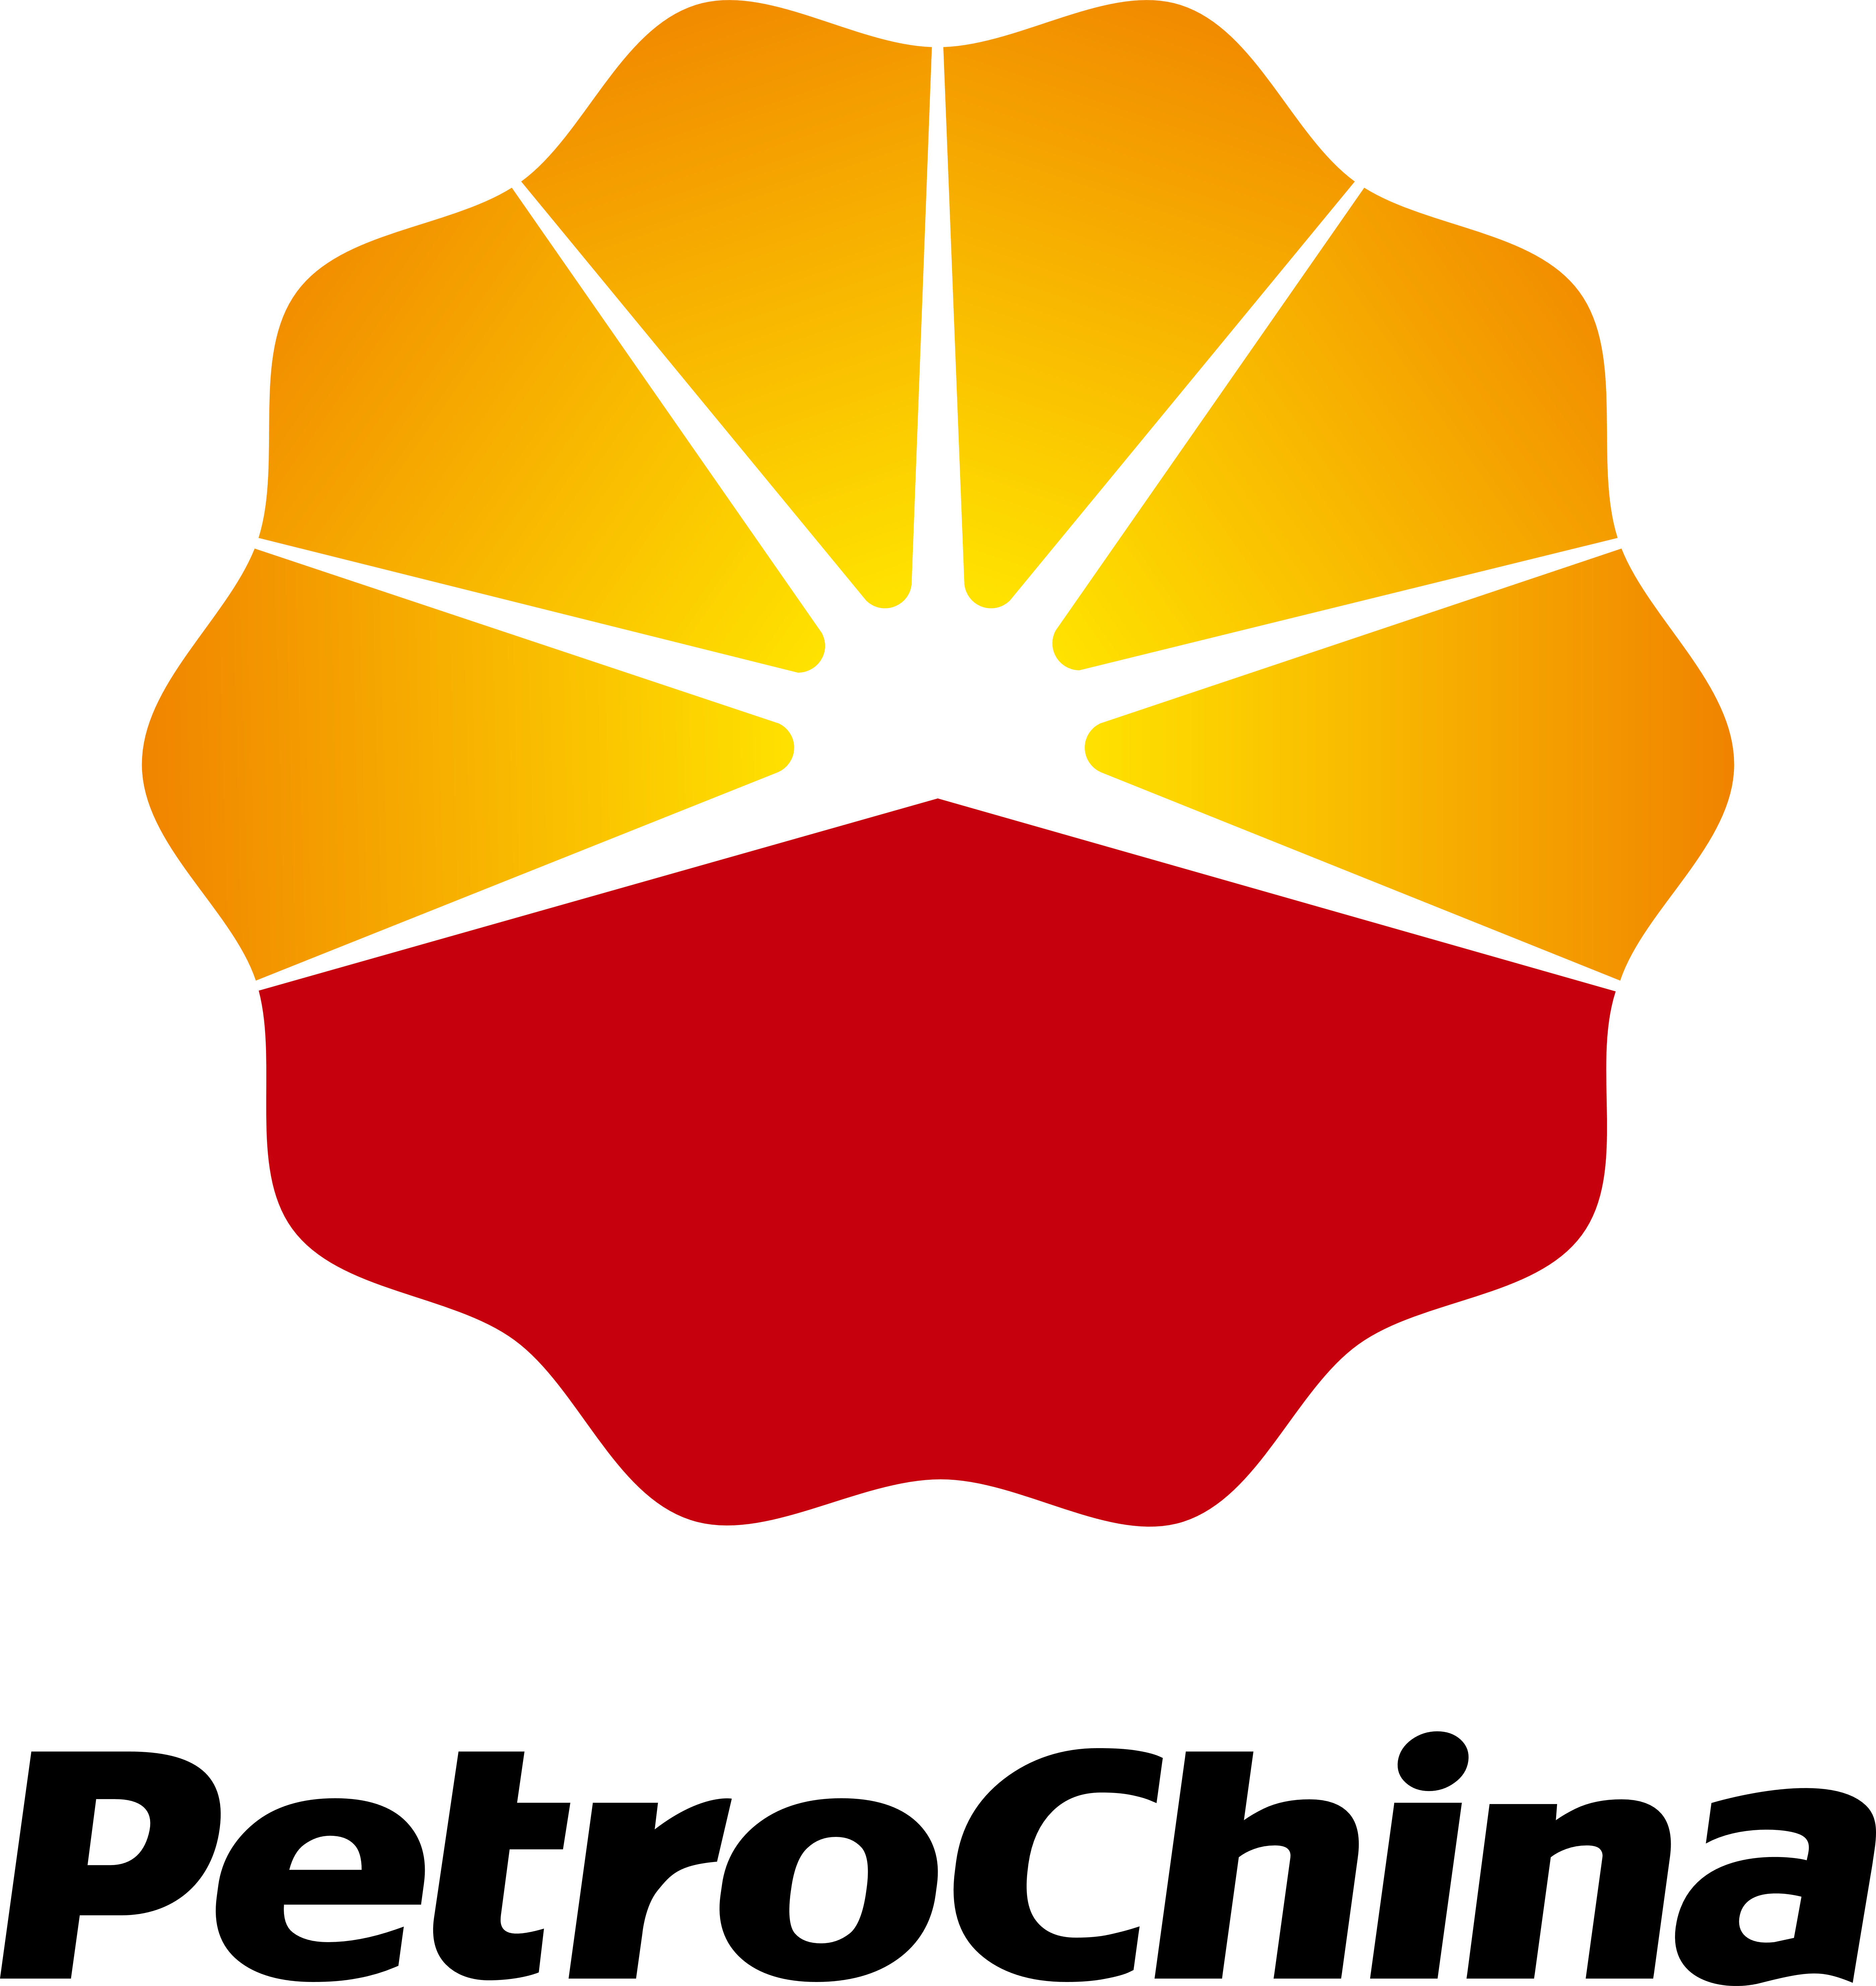 PetroChina Logo - PetroChina – Logos Download